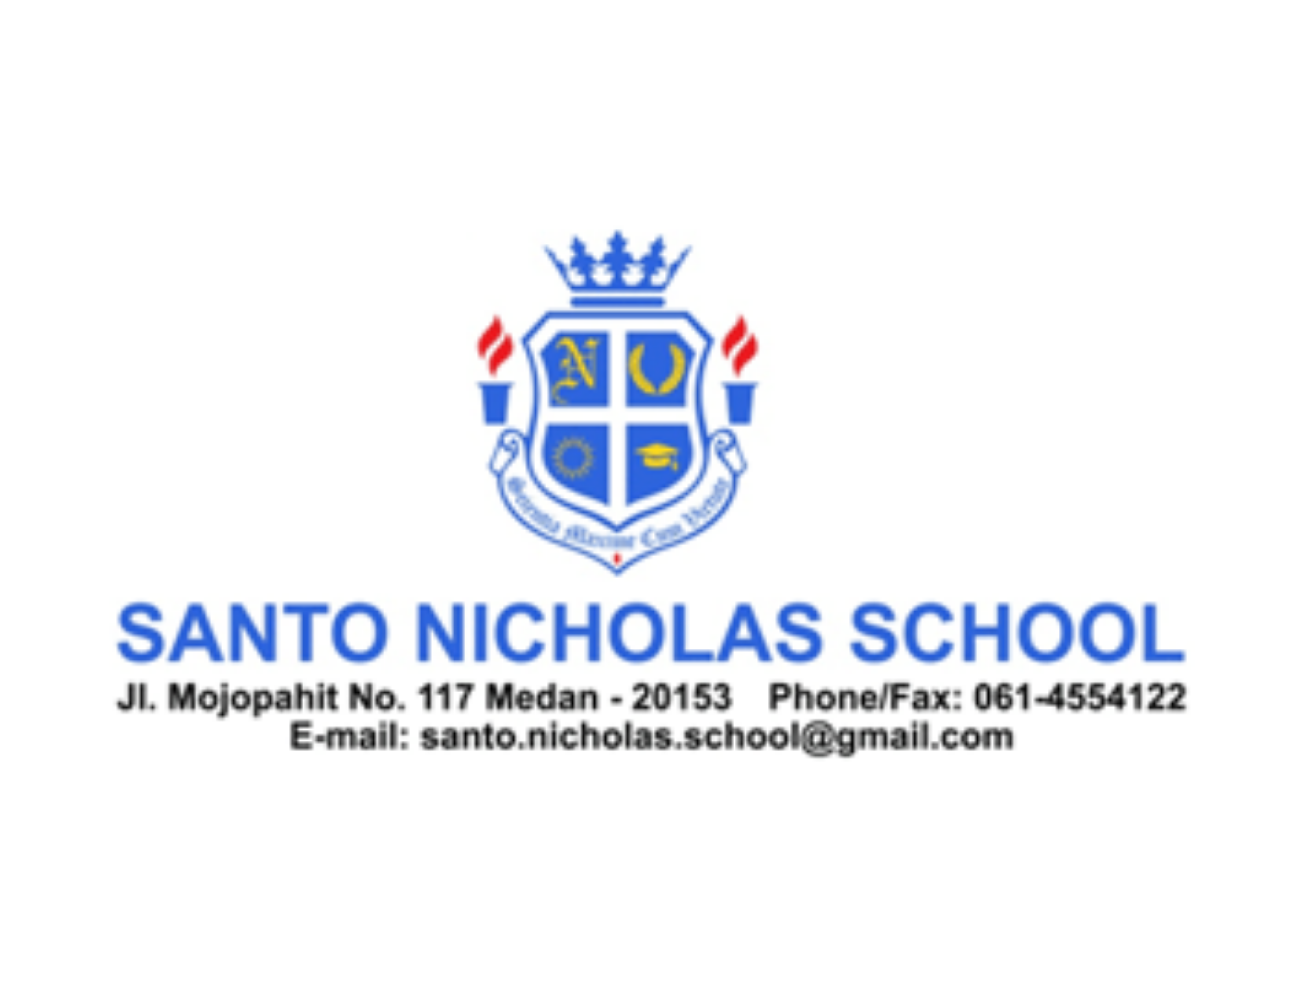 sekolah santo nicholas